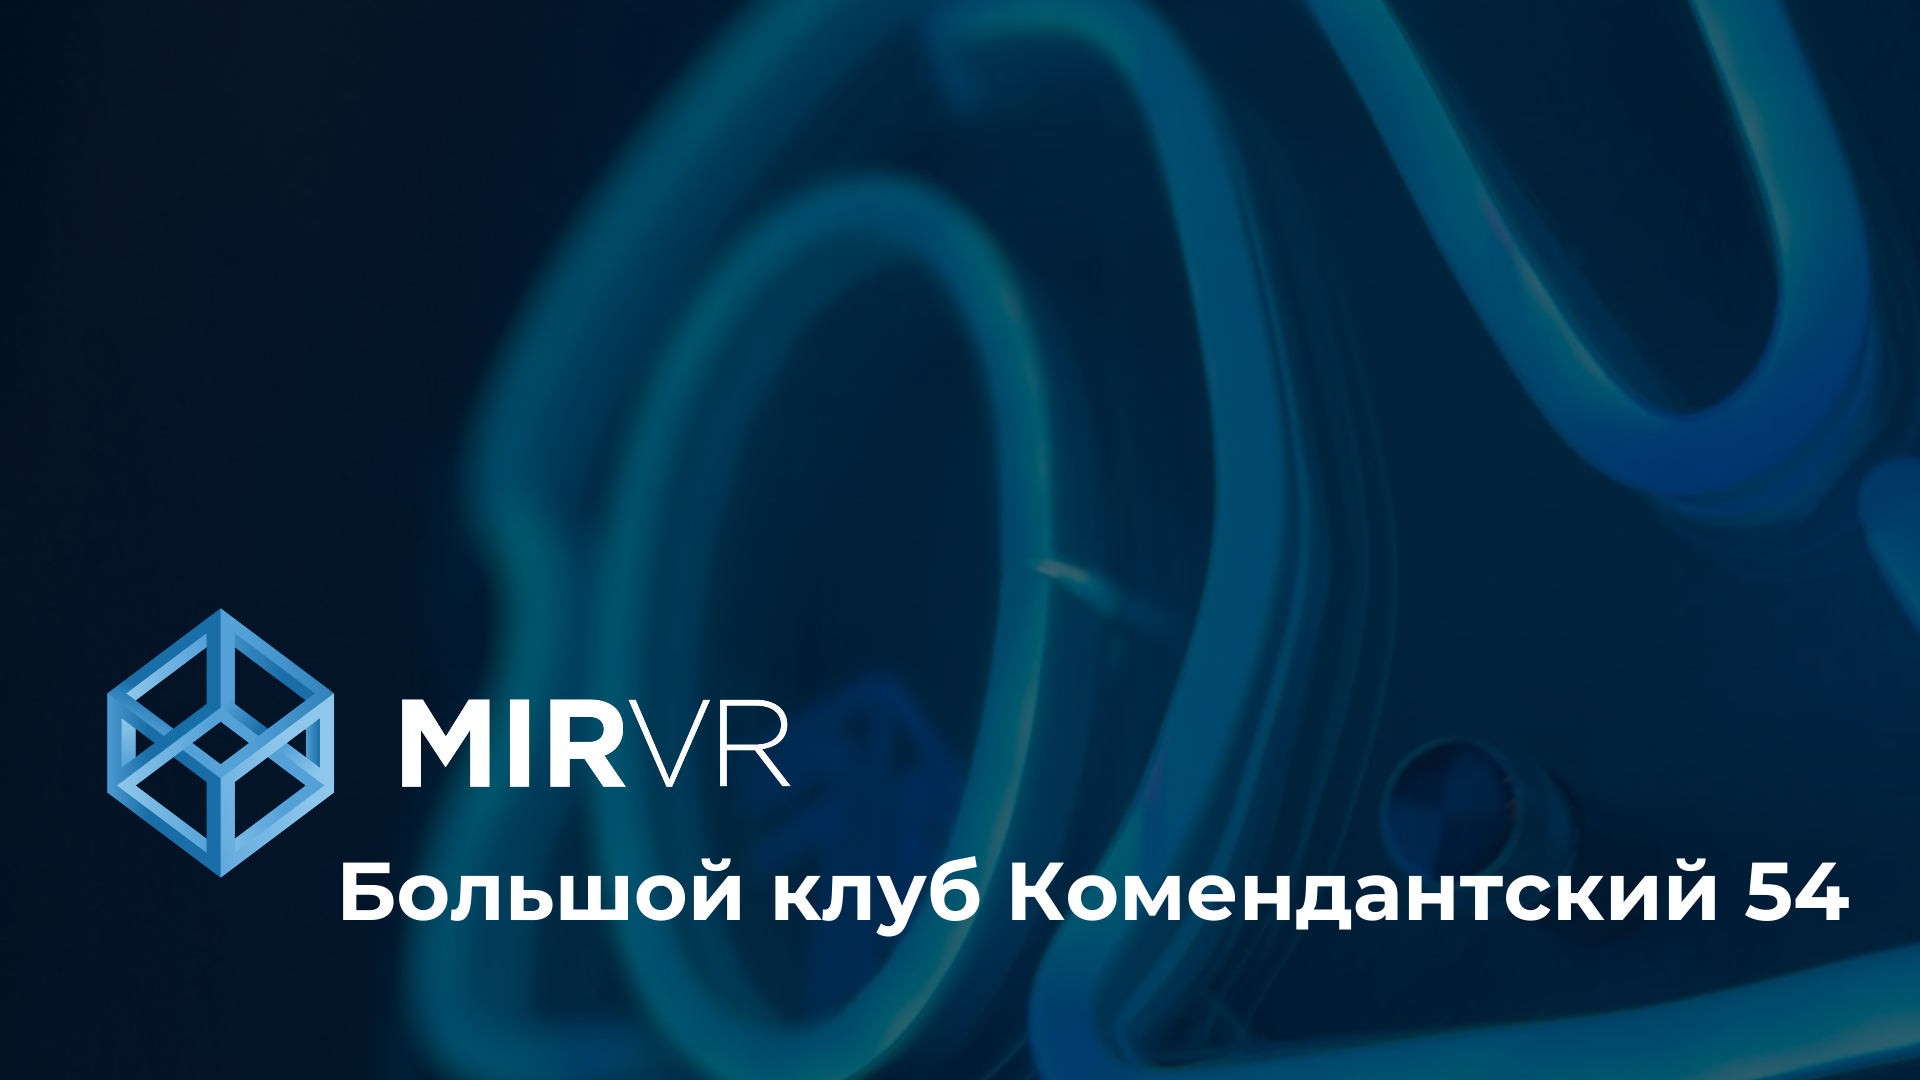 MIR VR в ЖК "Legenda" на Комендантском